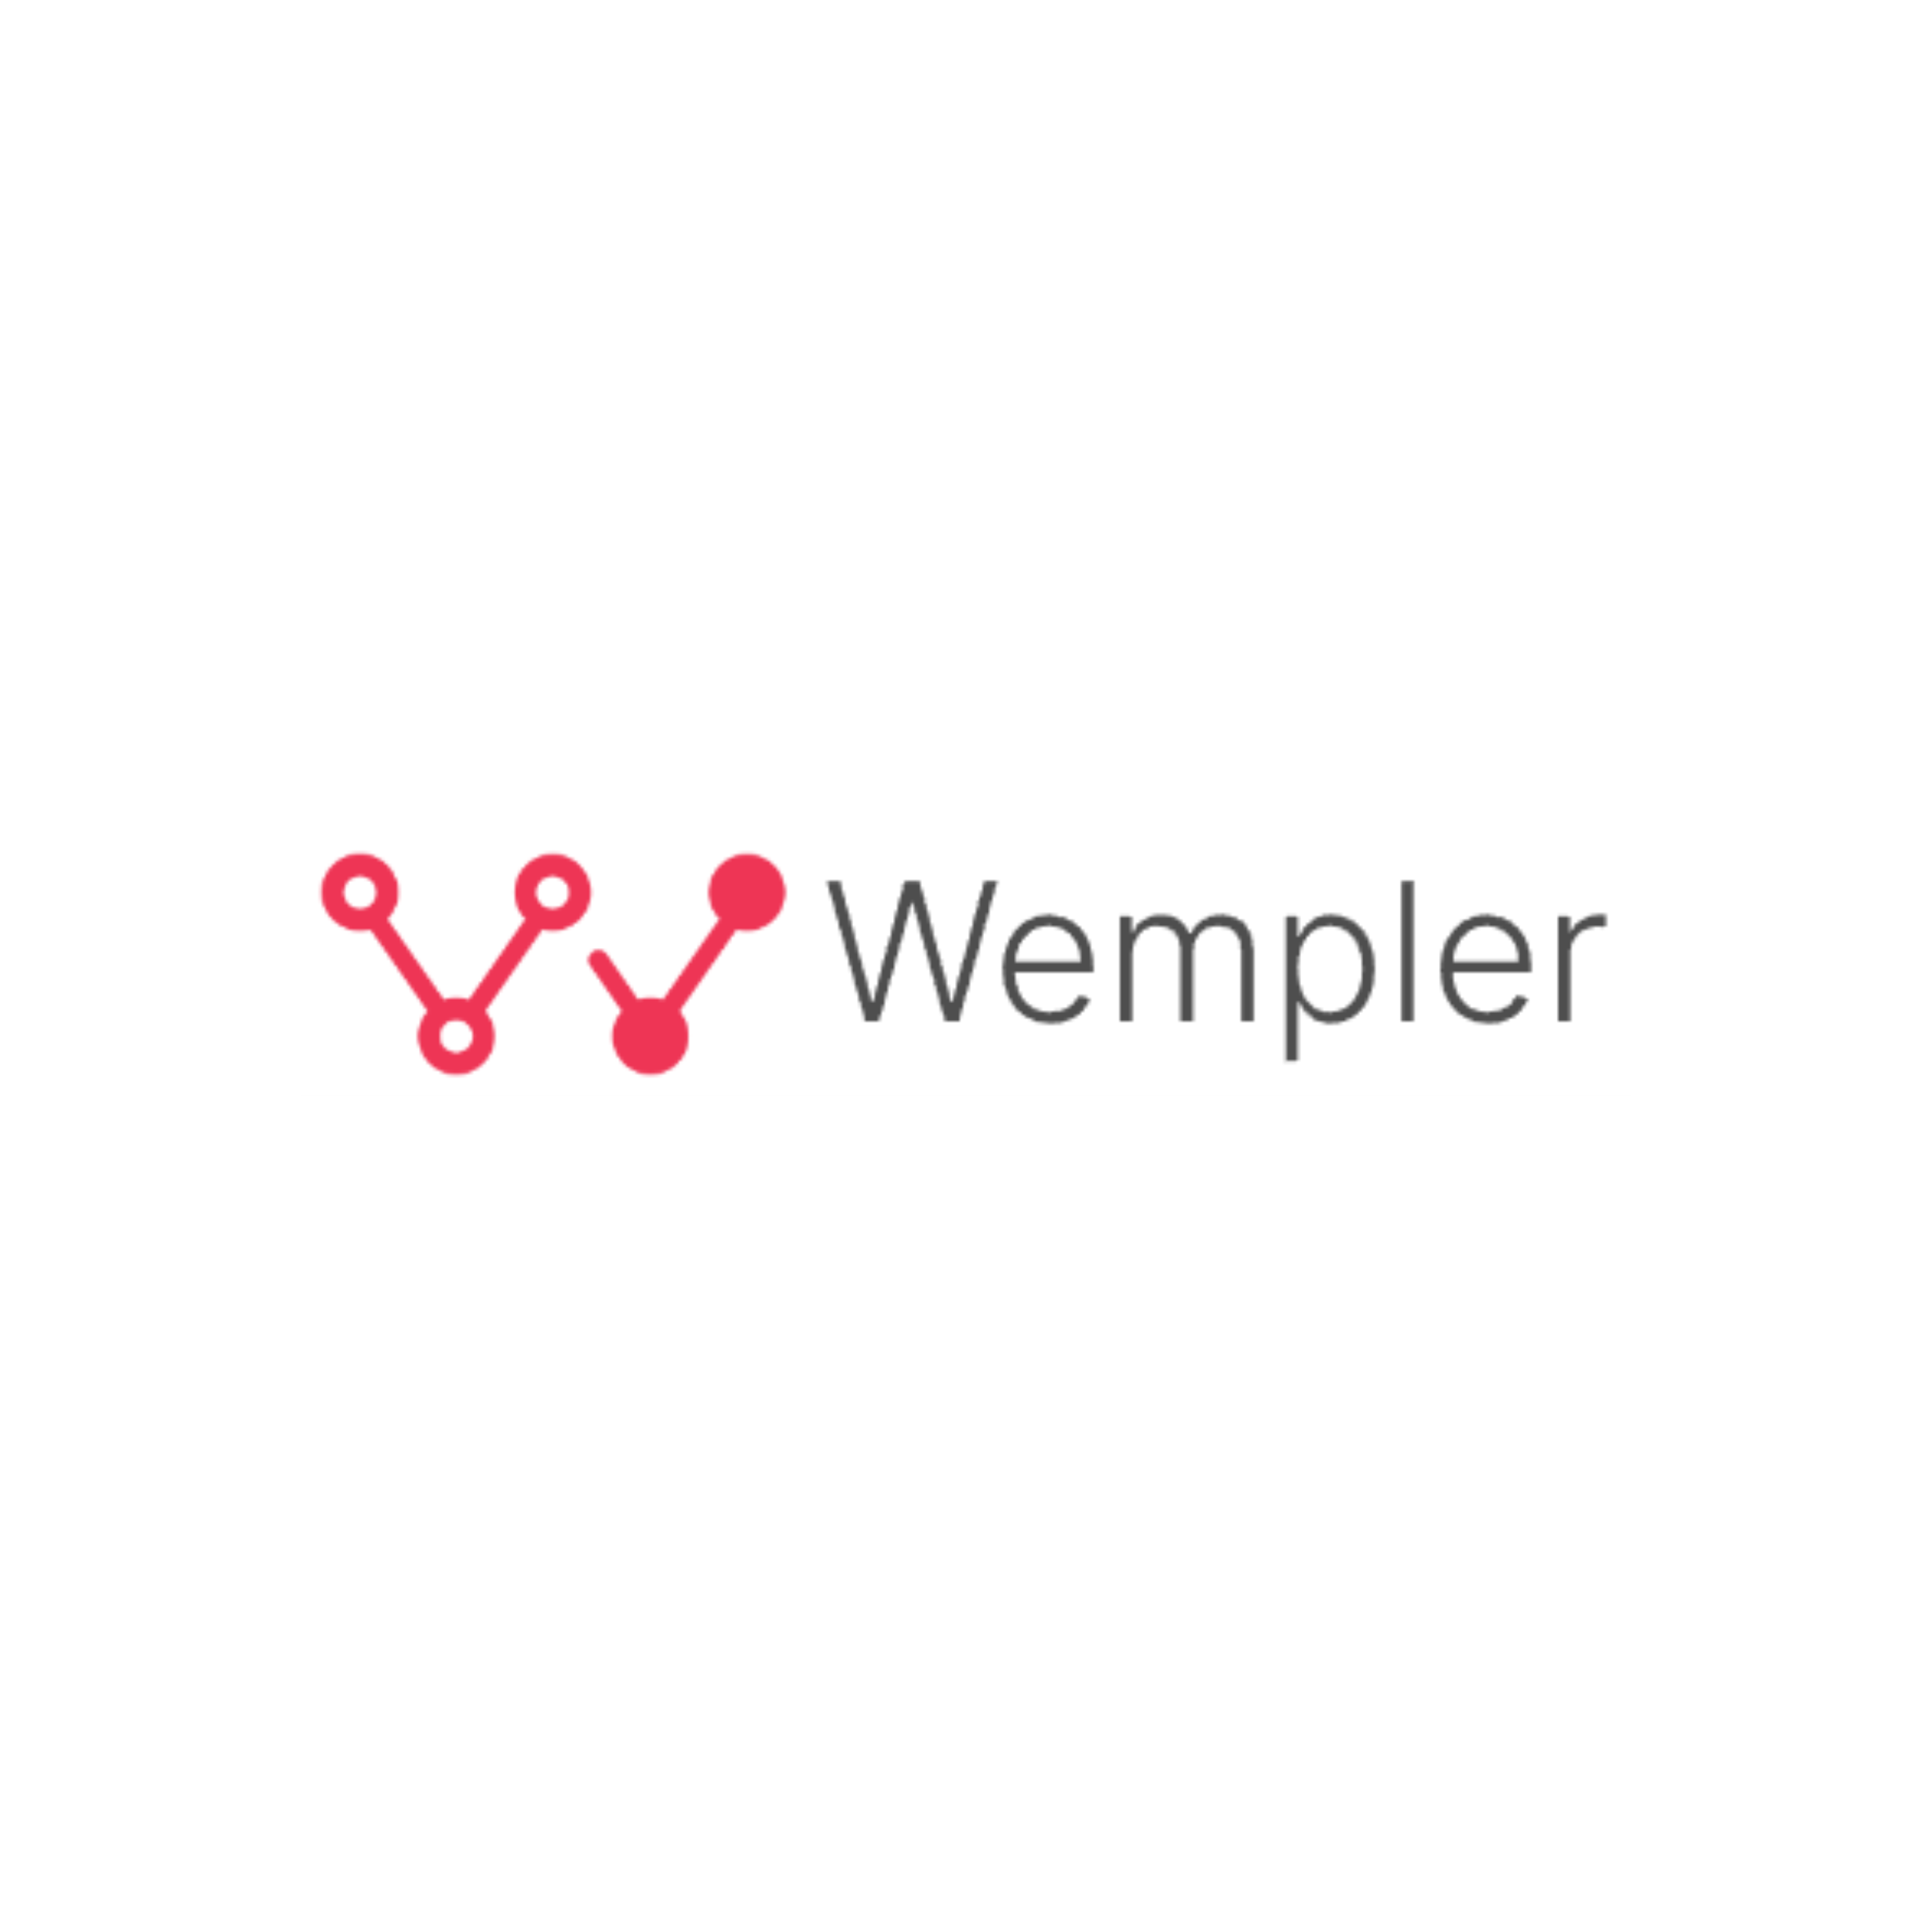 Wempler